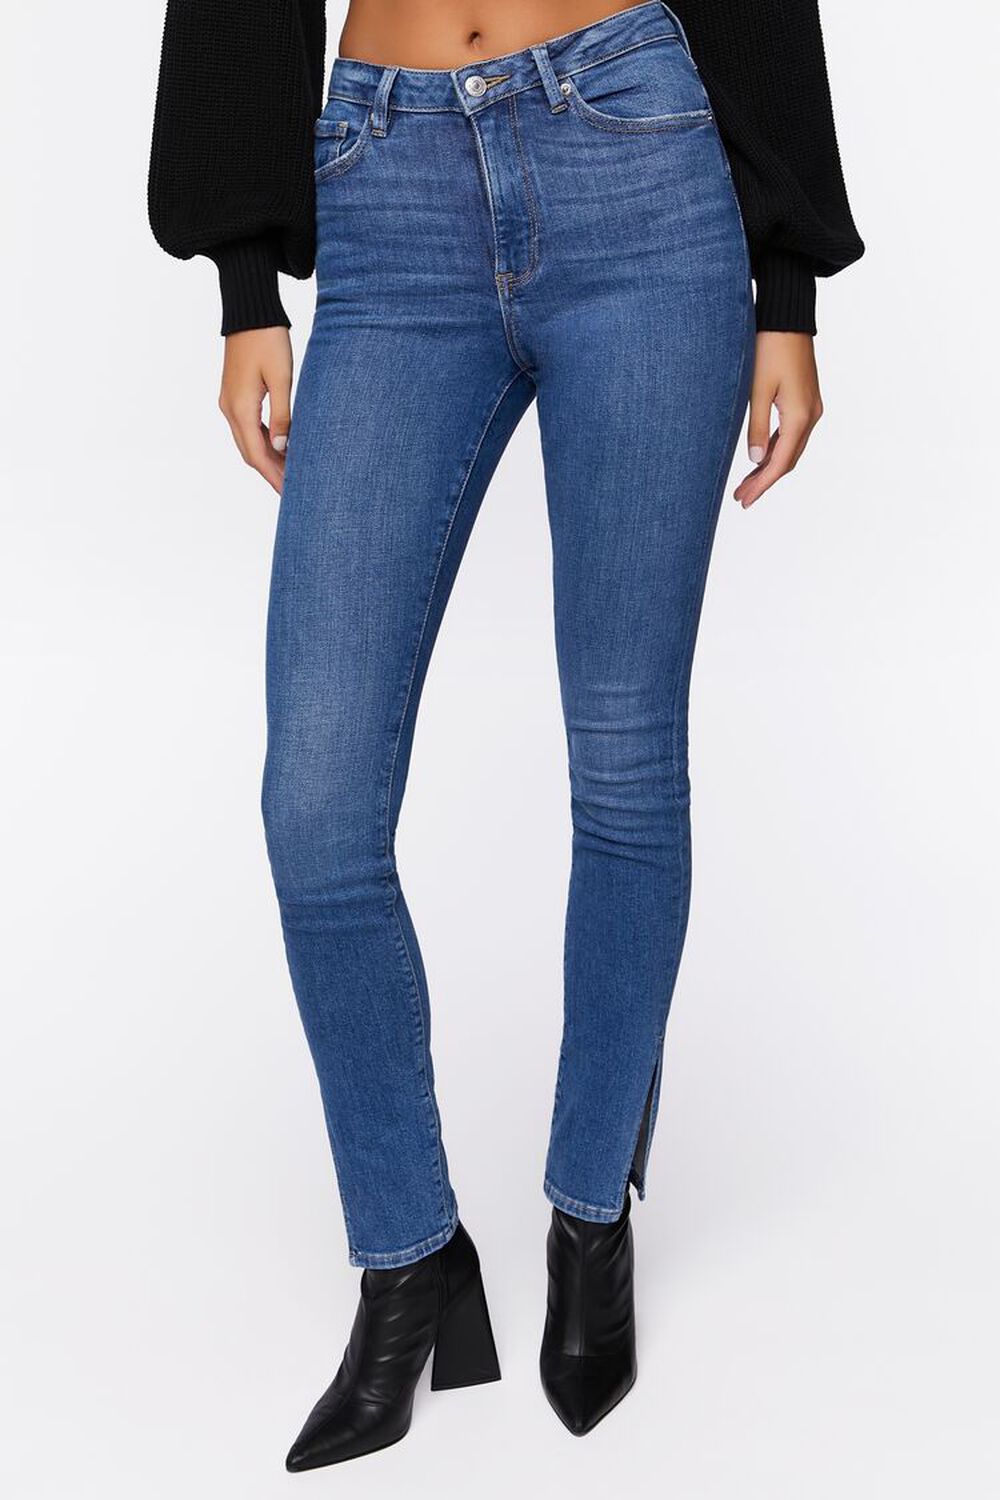 MEDIUM DENIM Split-Hem High-Rise Skinny Jeans, image 2